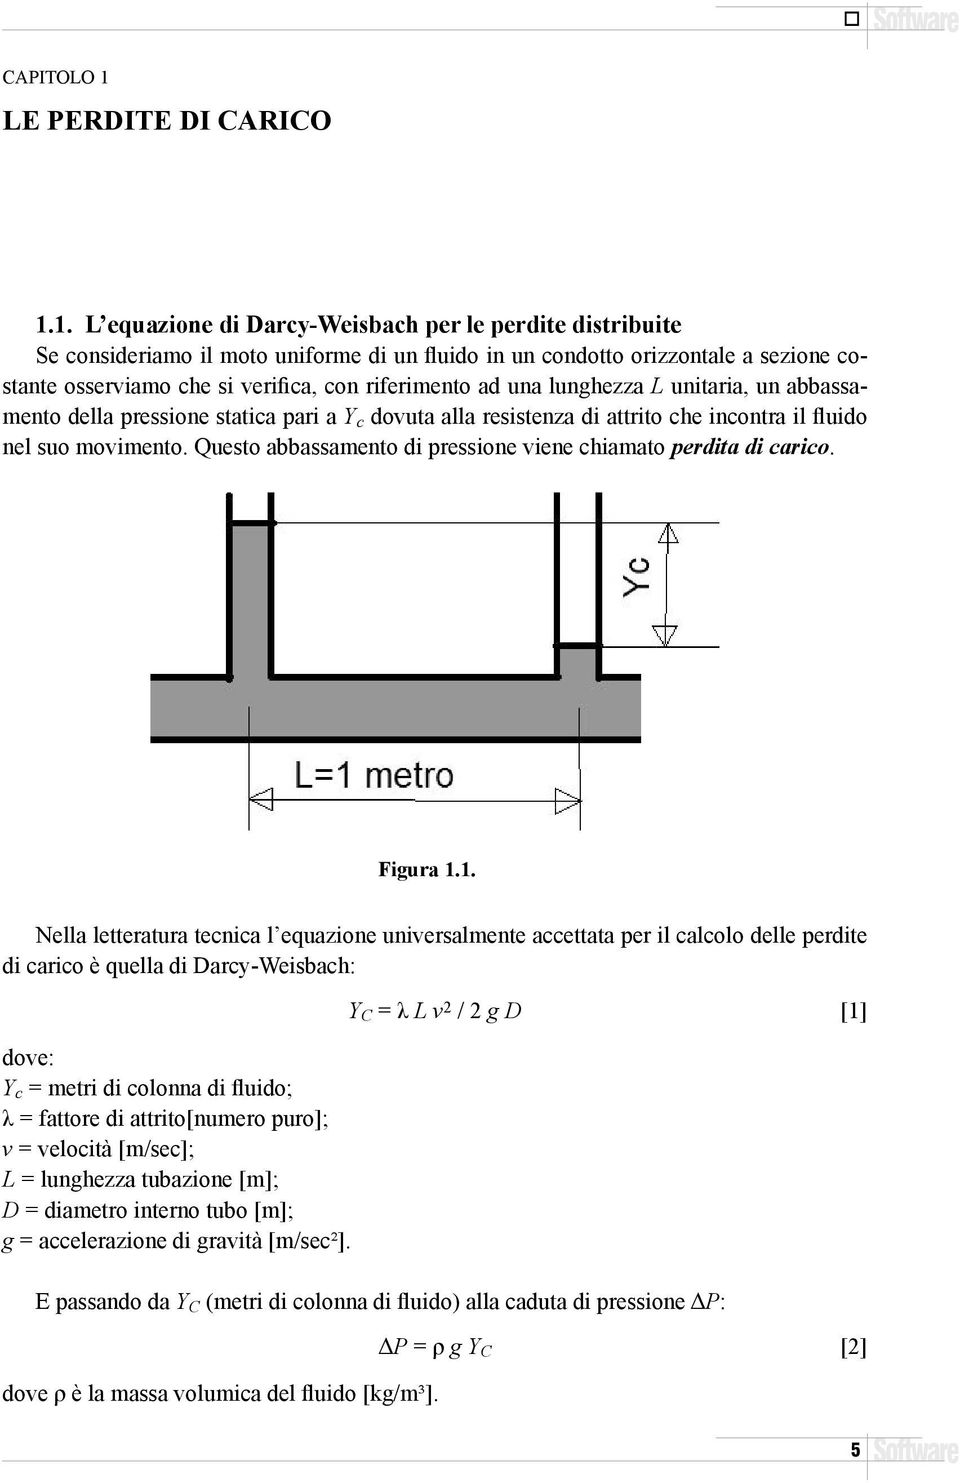 1. L equazione di Darcy-Weisbach per le perdite distribuite Se consideriamo il moto uniforme di un fluido in un condotto orizzontale a sezione costante osserviamo che si verifica, con riferimento ad